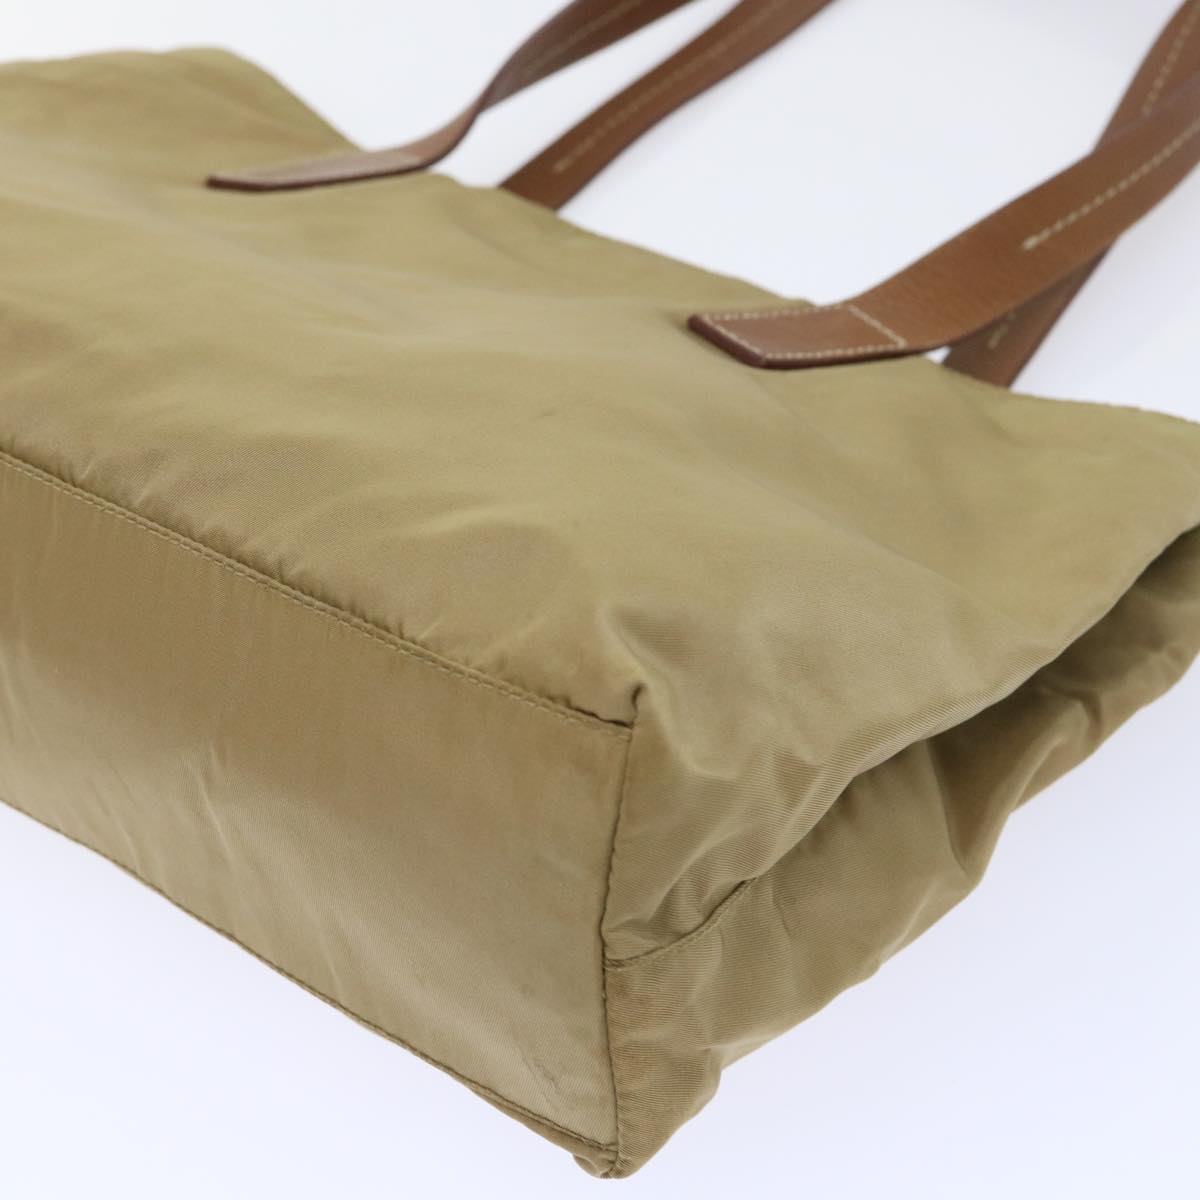 PRADA Tote Bag Nylon Leather Khaki Auth cl715